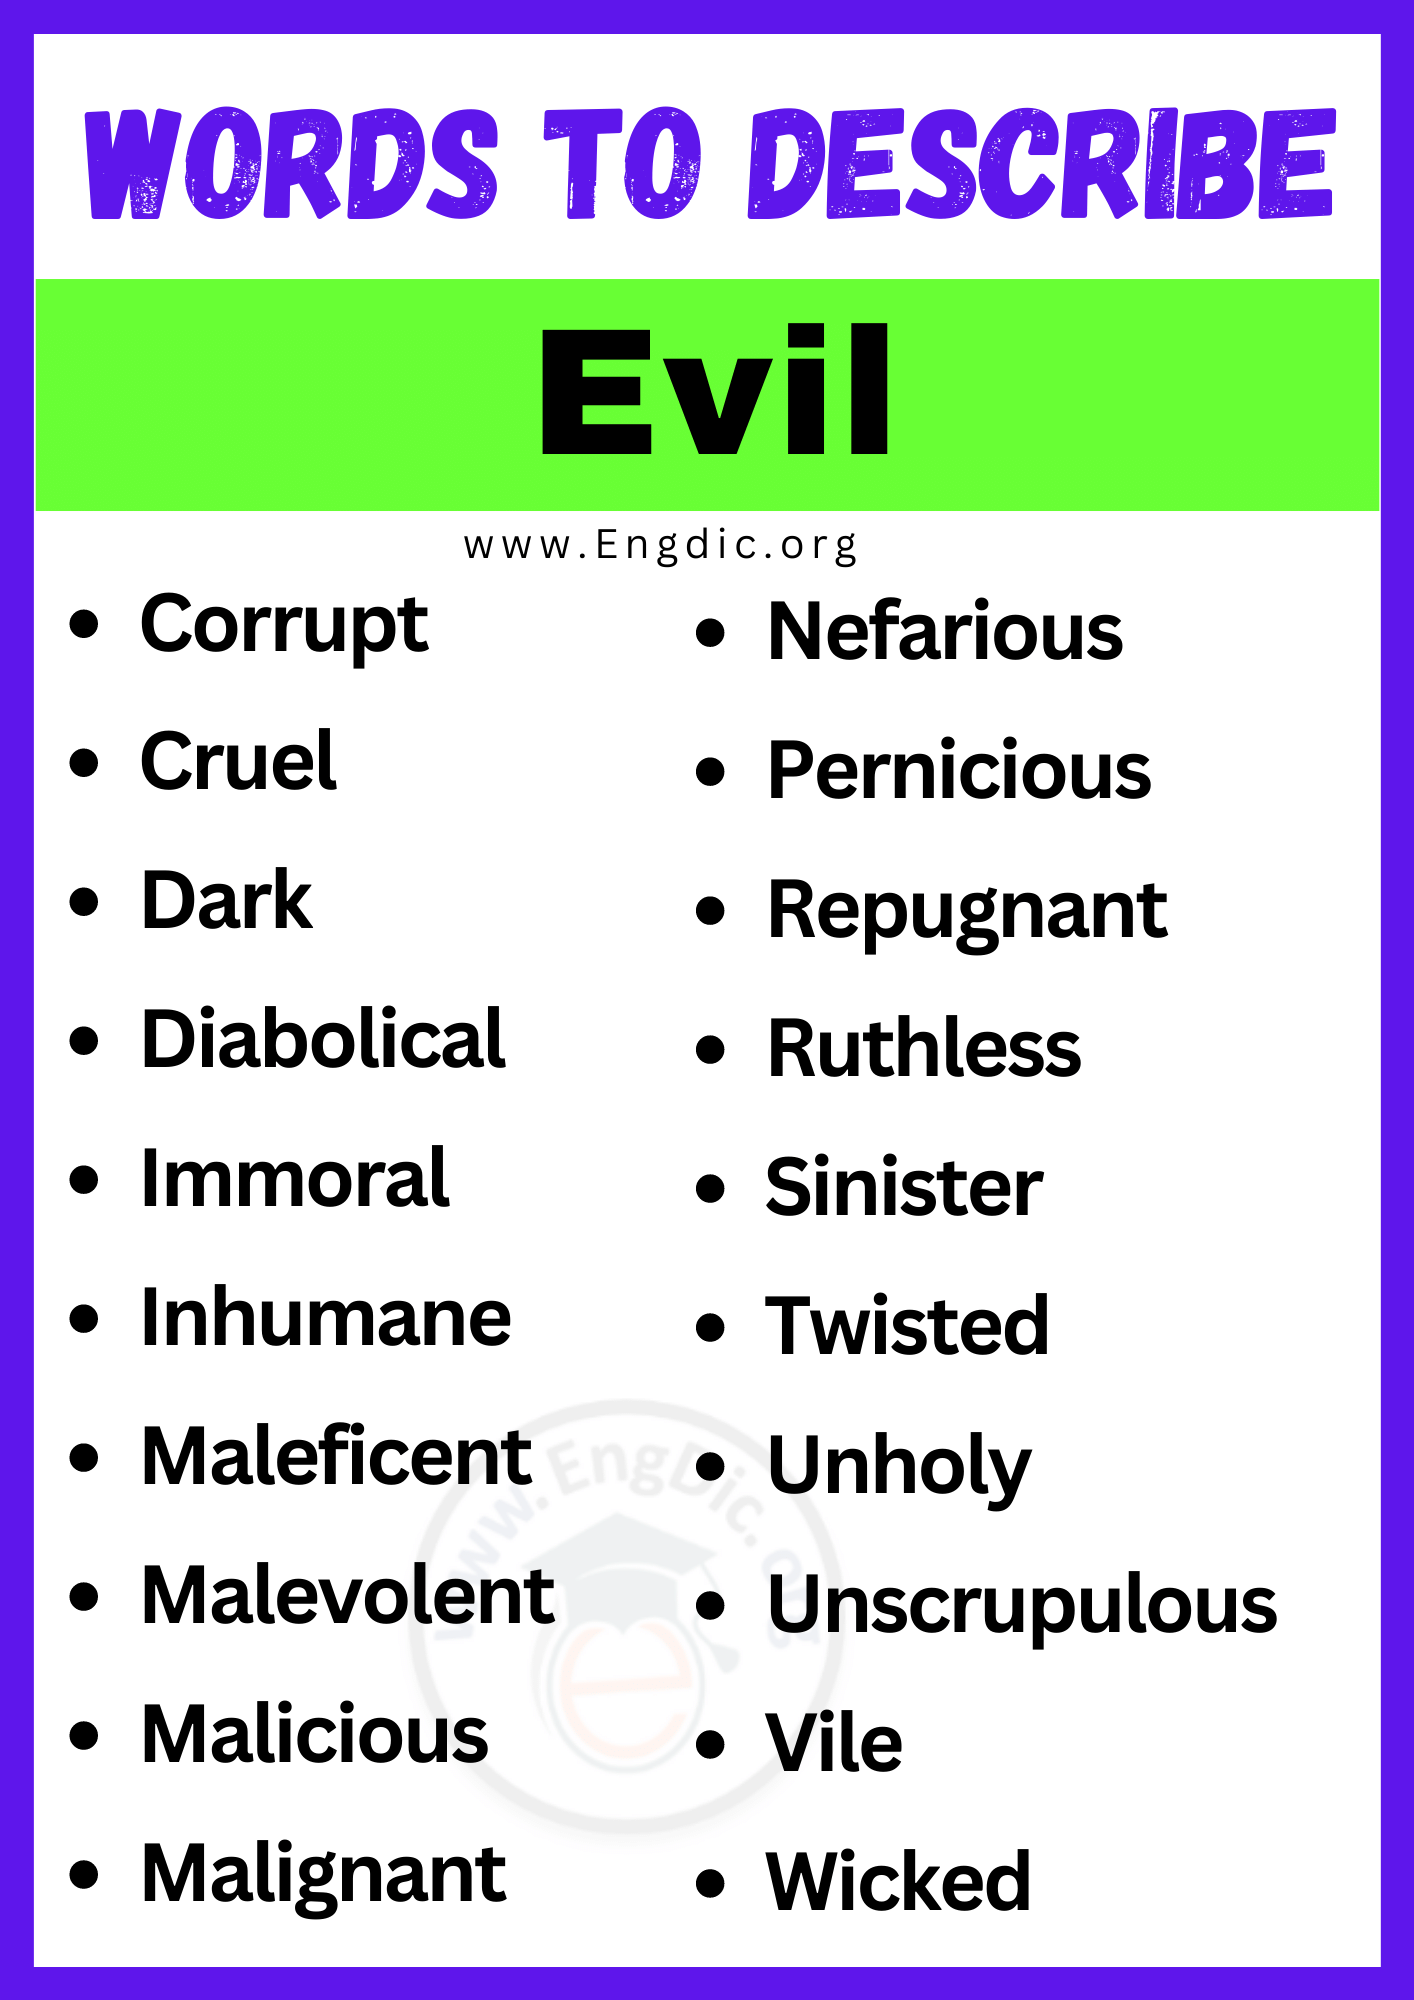 Words to Describe Evil